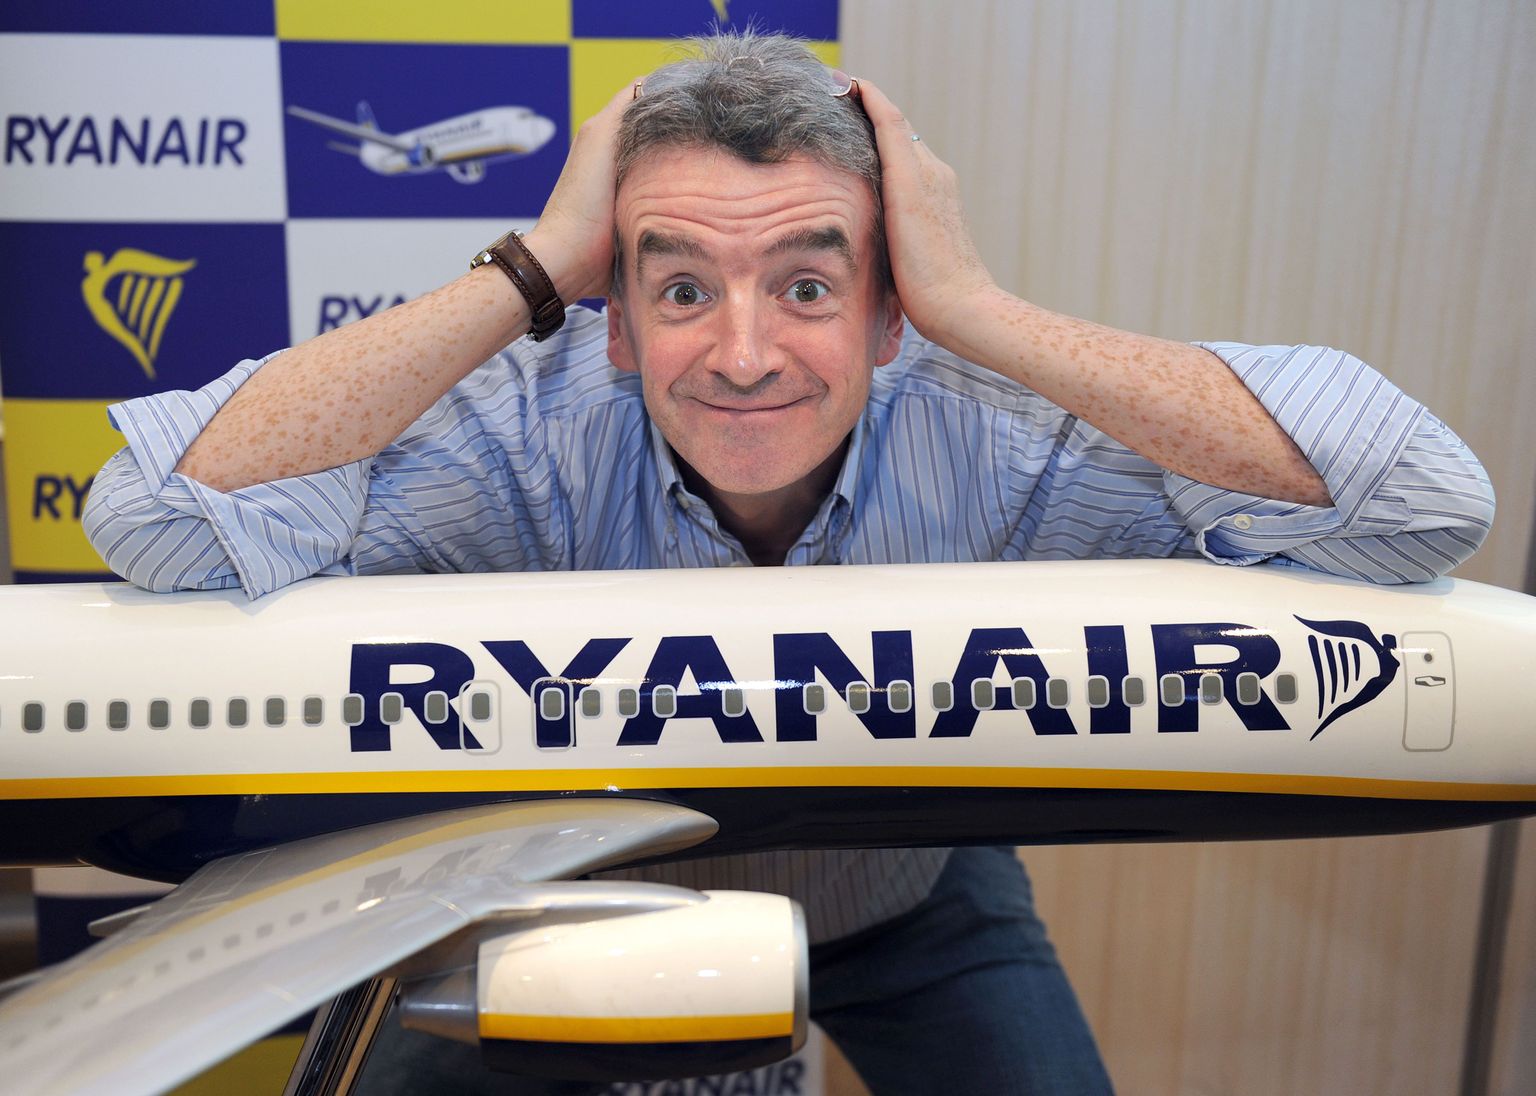 Исполнительный директор Ryanair Майкл О'Лири.